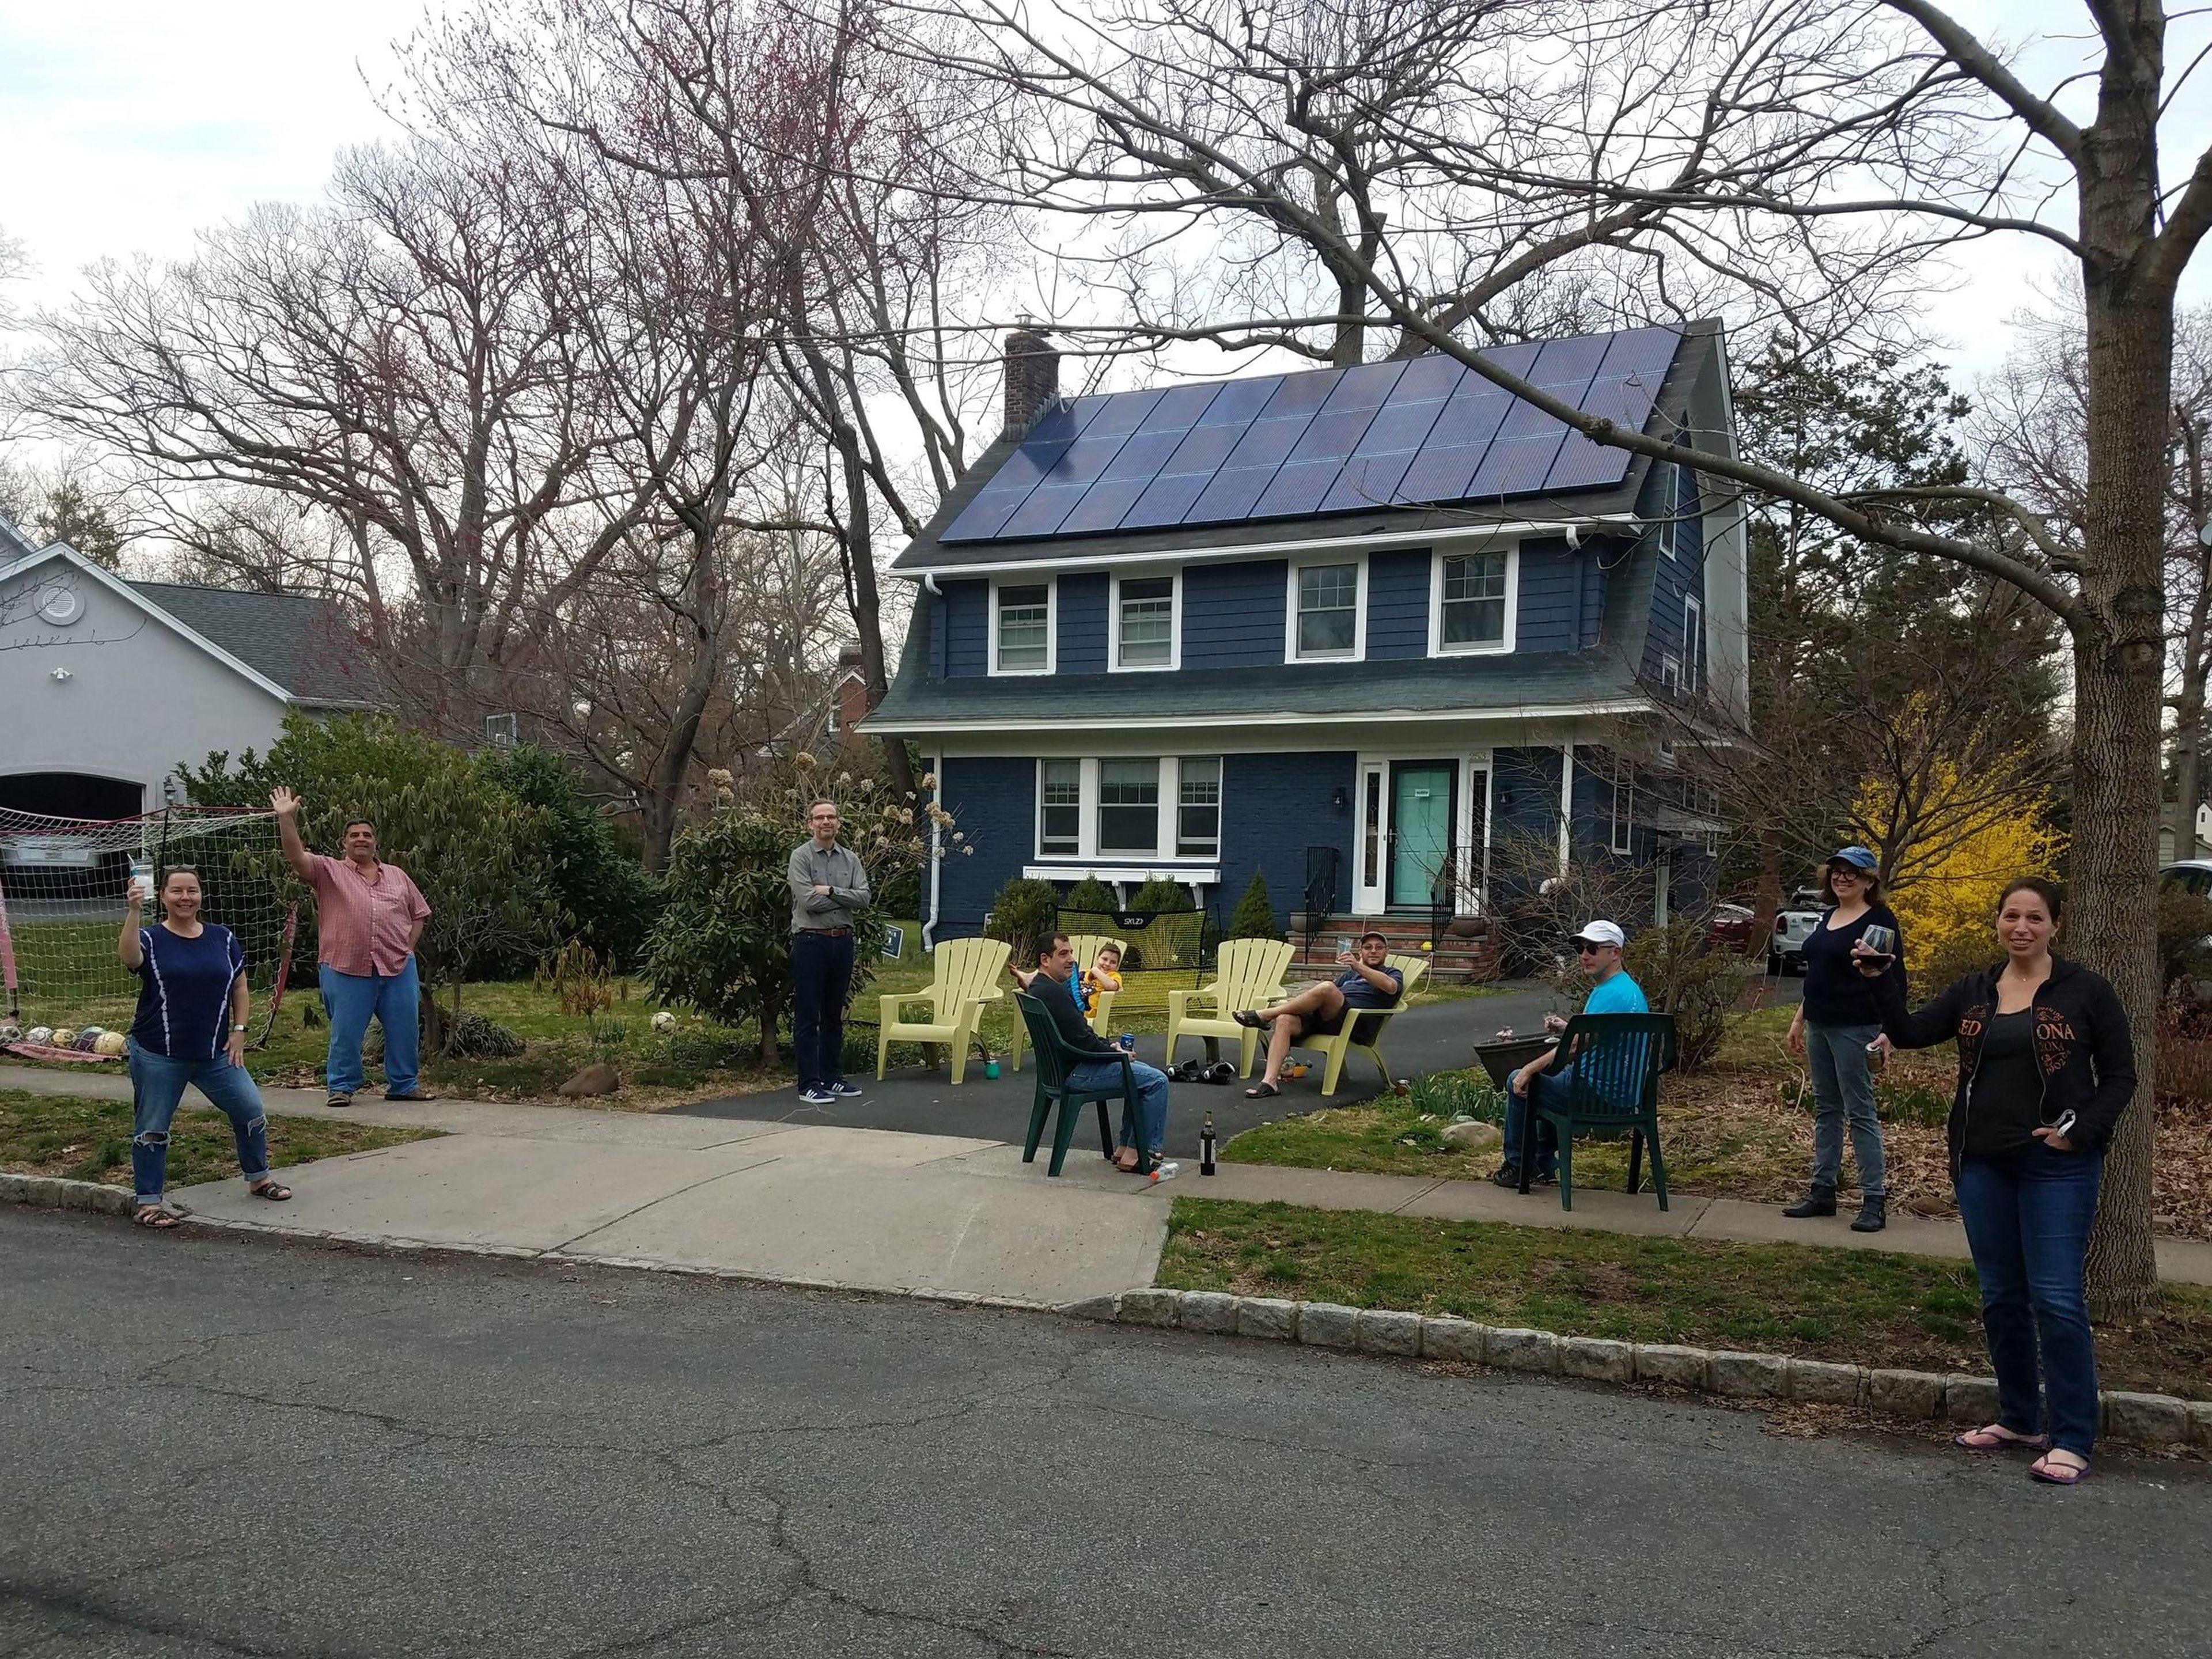 Los residentes de South Orange, New Jersey, EEUU, hacen una fiesta de distanciamiento social al aire libre mientras permanecen a los 2 metros recomendados de distancia, durante el brote de COVID-19, el 20 de marzo de 2020.